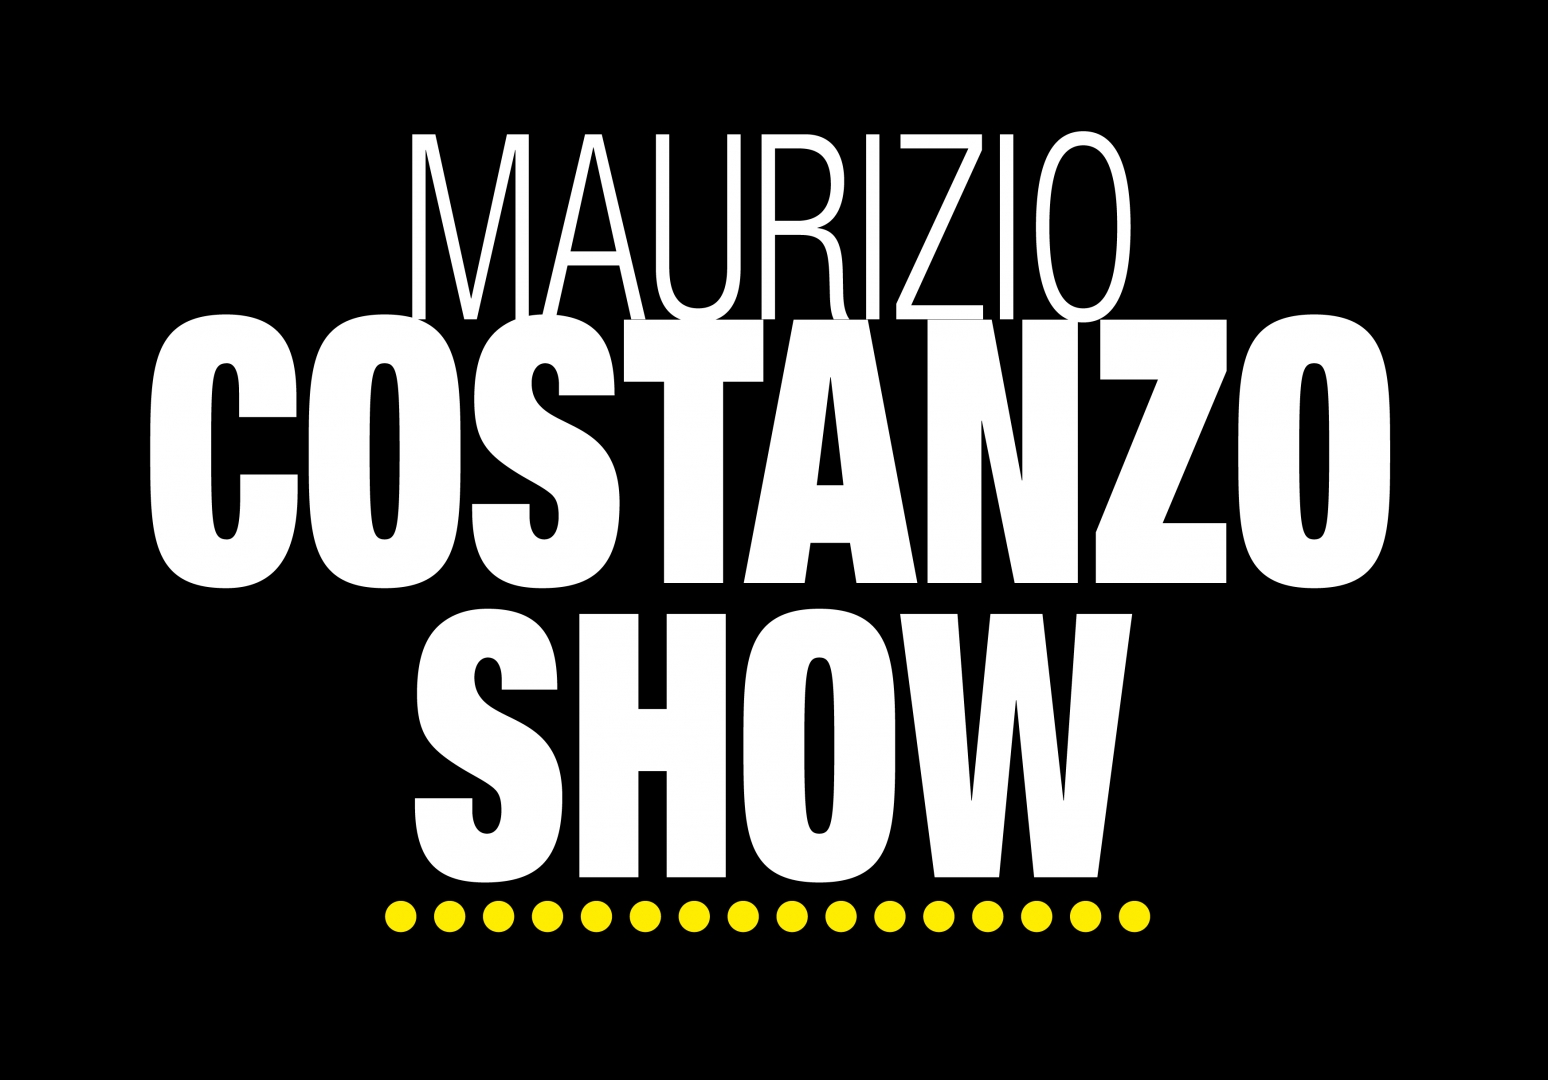 Maurizio Costanzo Show 24 Maggio 2022